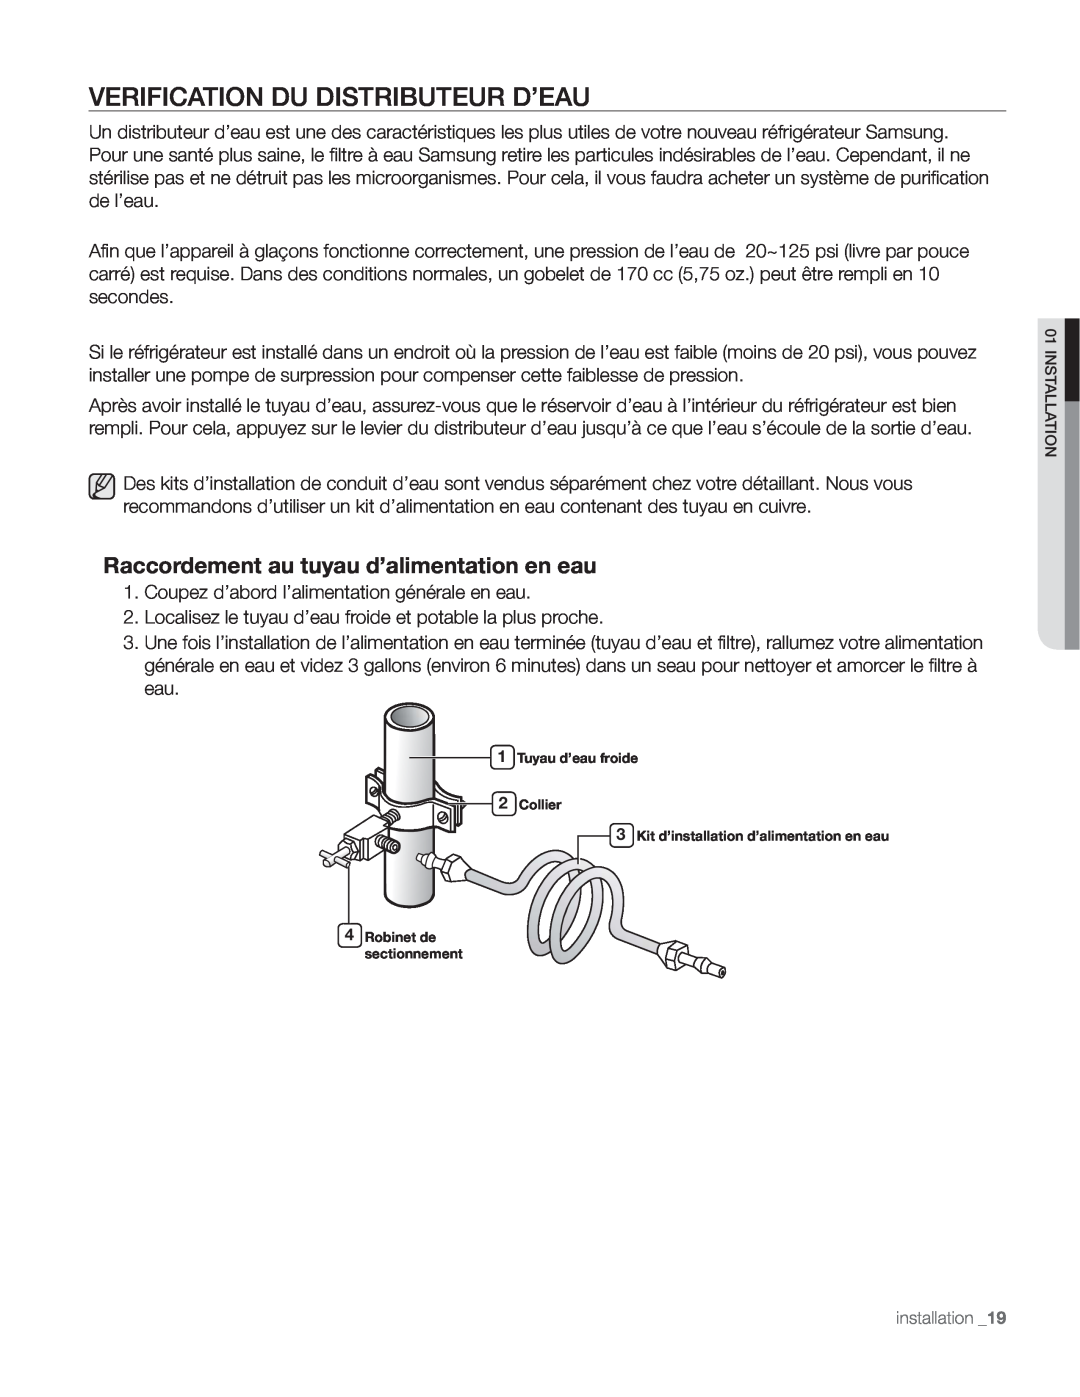 Samsung DA68-01890Q user manual Verification Du Distributeur D’Eau, Raccordement au tuyau d’alimentation en eau 